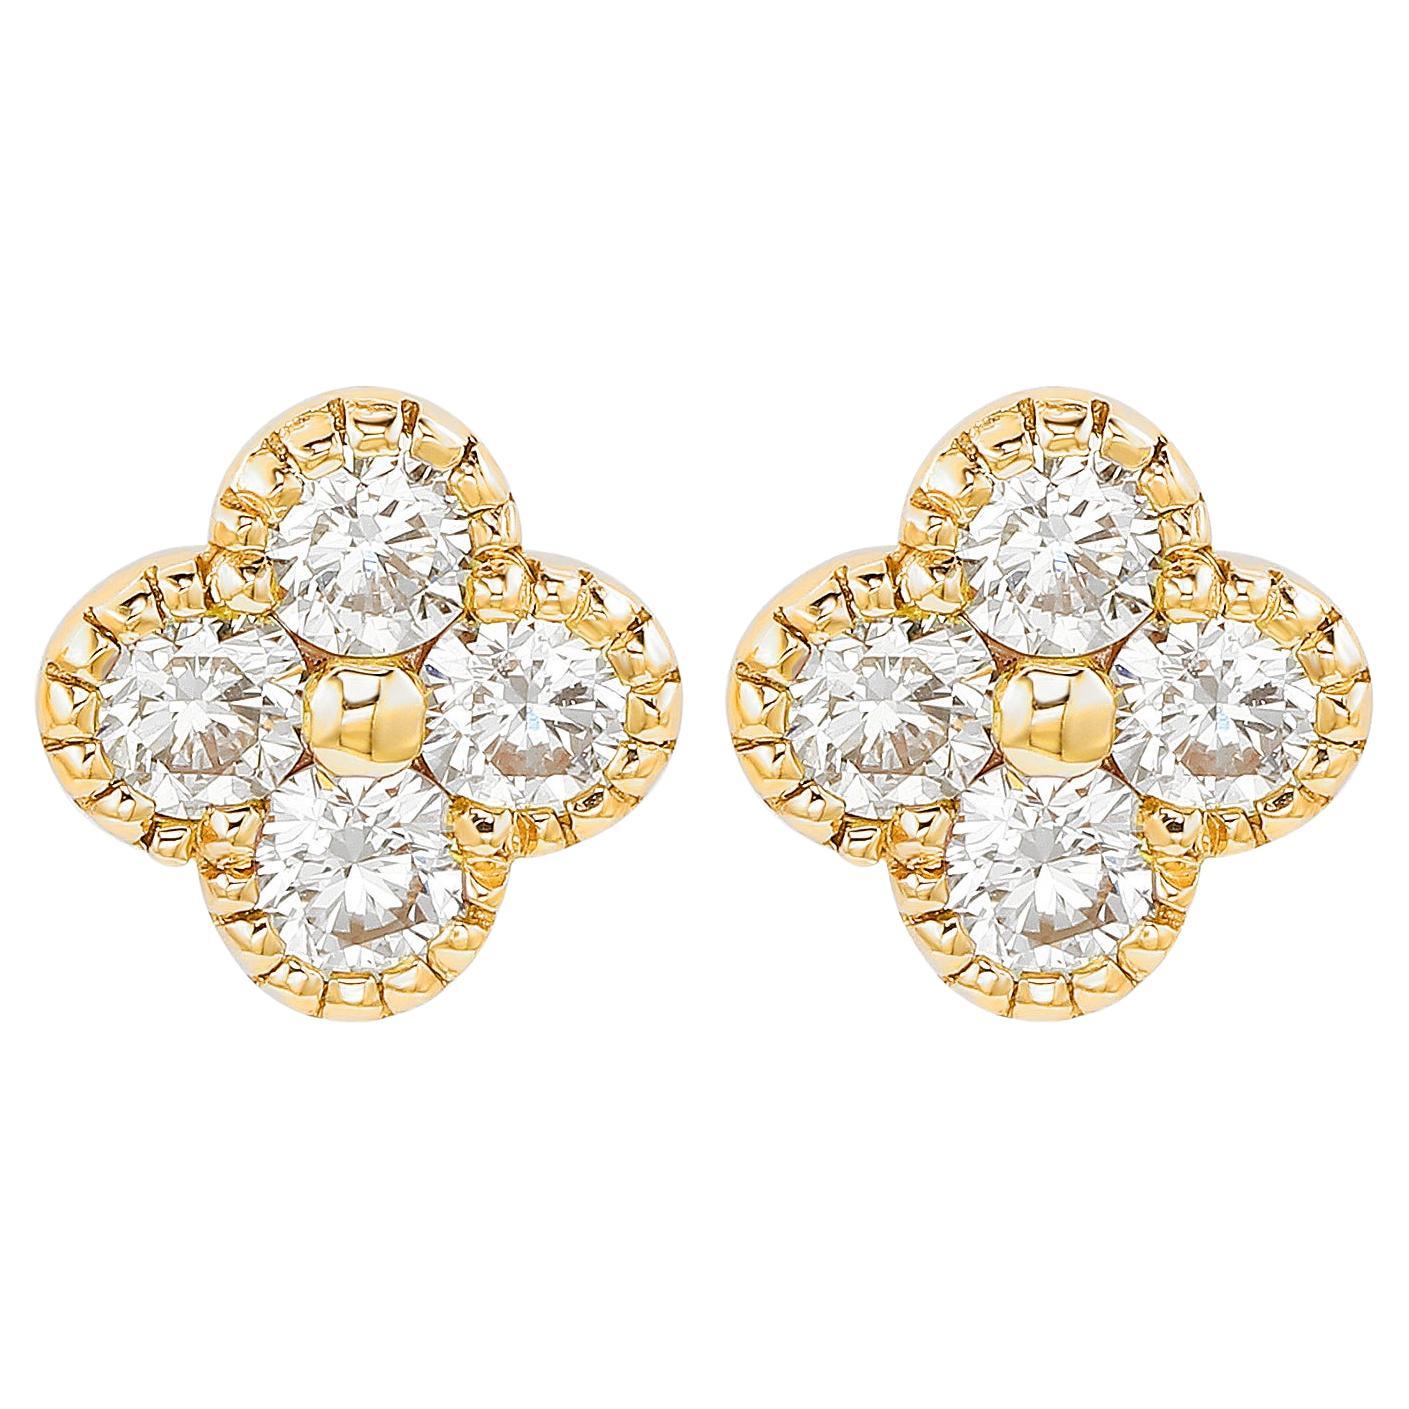 Suzy Levian clous d'oreilles trèfle en or jaune 14 carats avec diamants 0,40 carat poids total